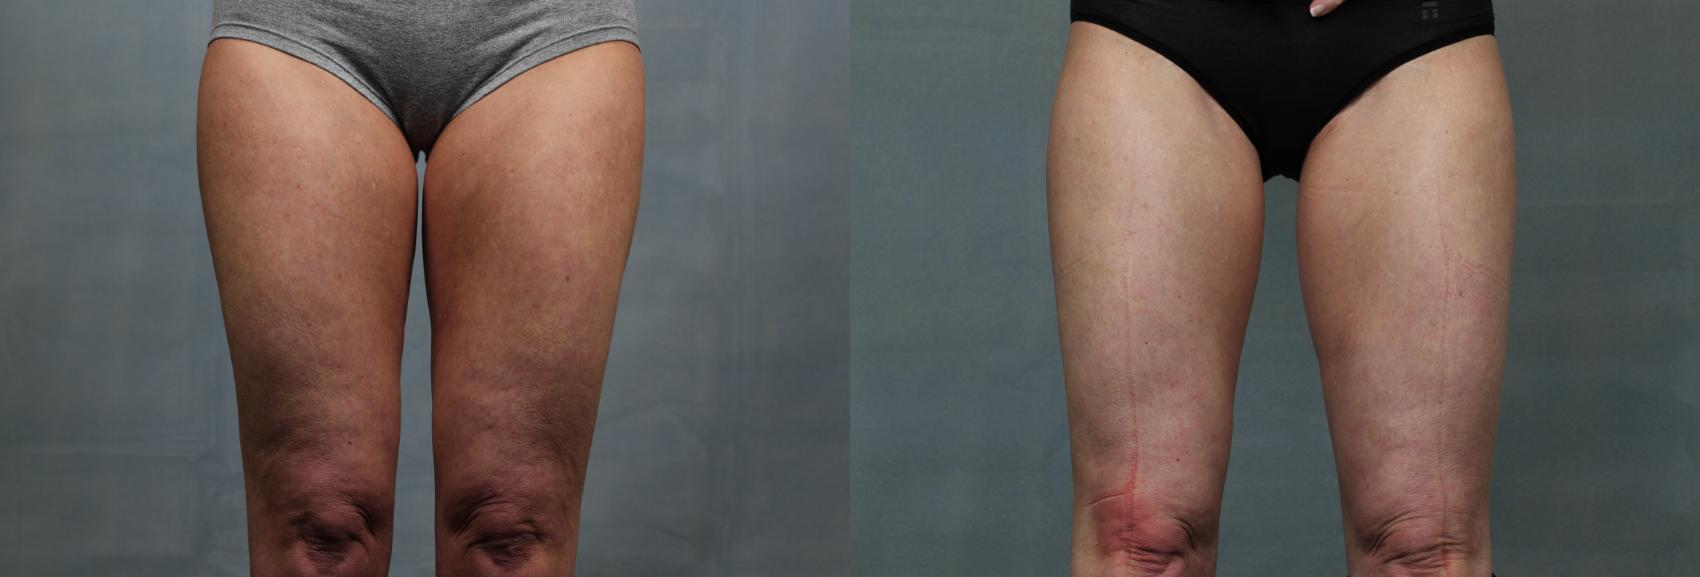 Cellulite Treatments Case 616 Before & After Front | Louisville, KY | CaloSpa® Rejuvenation Center